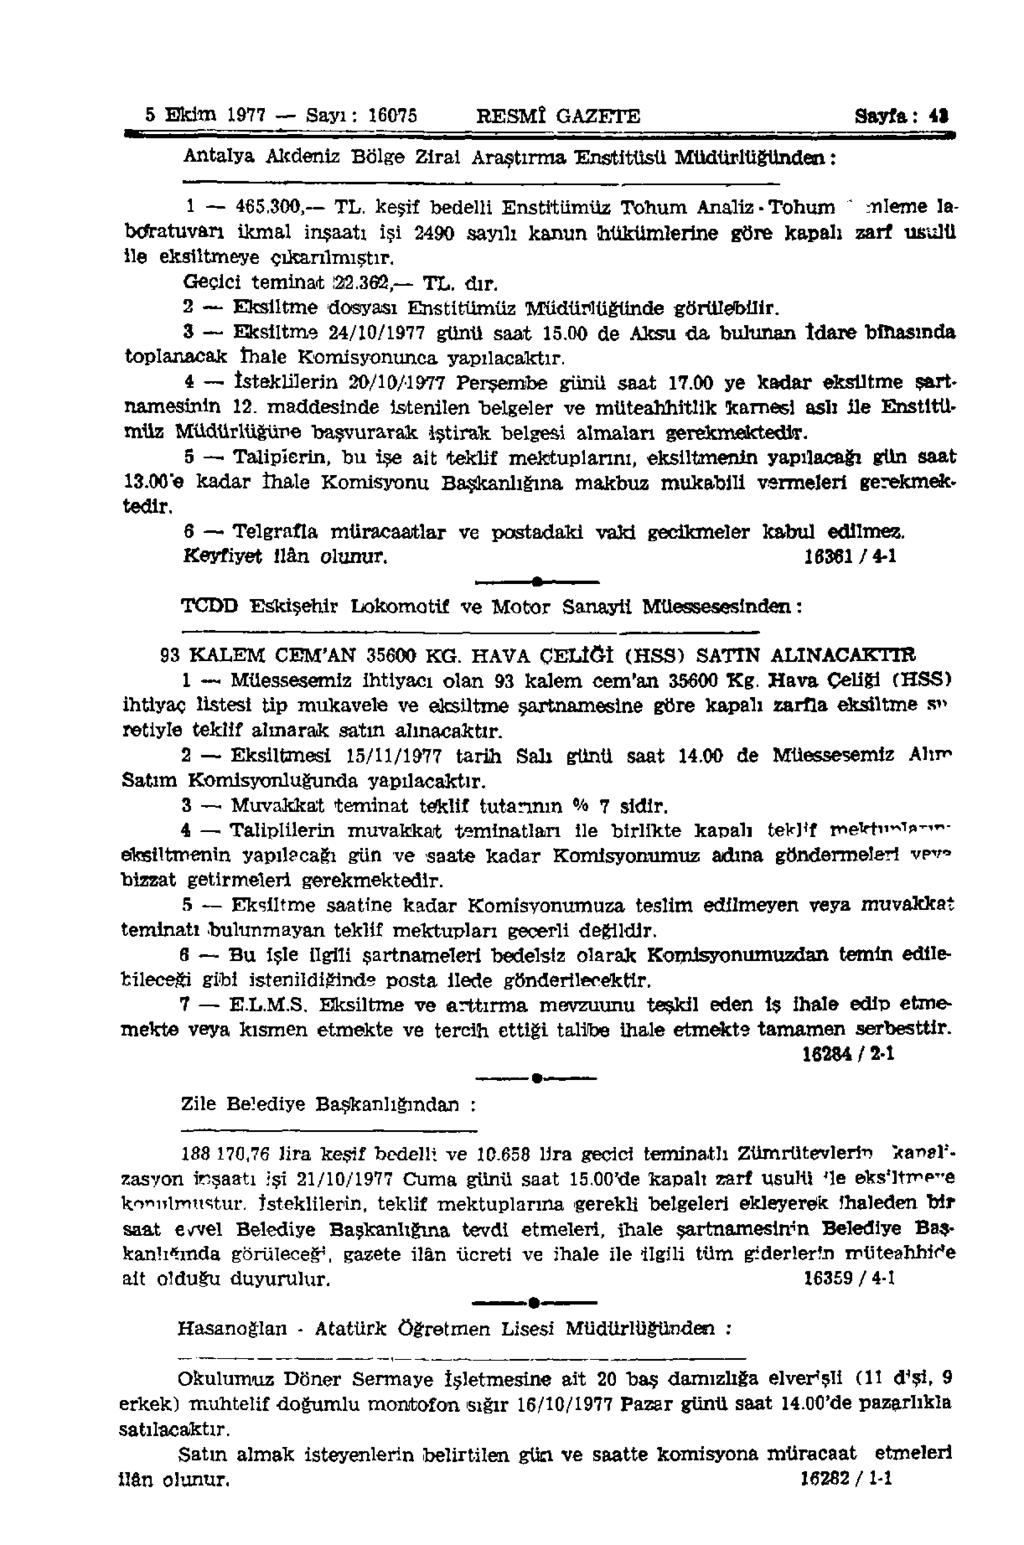 5 Ekim 1977 Sayı: 16075 RESMÎ GAZETE Sayfa: 41 Antalya Alîdeniz Bölge Zirai Araştırma Enstitüsü Müdürlüğünden: 1 465.300, TL.